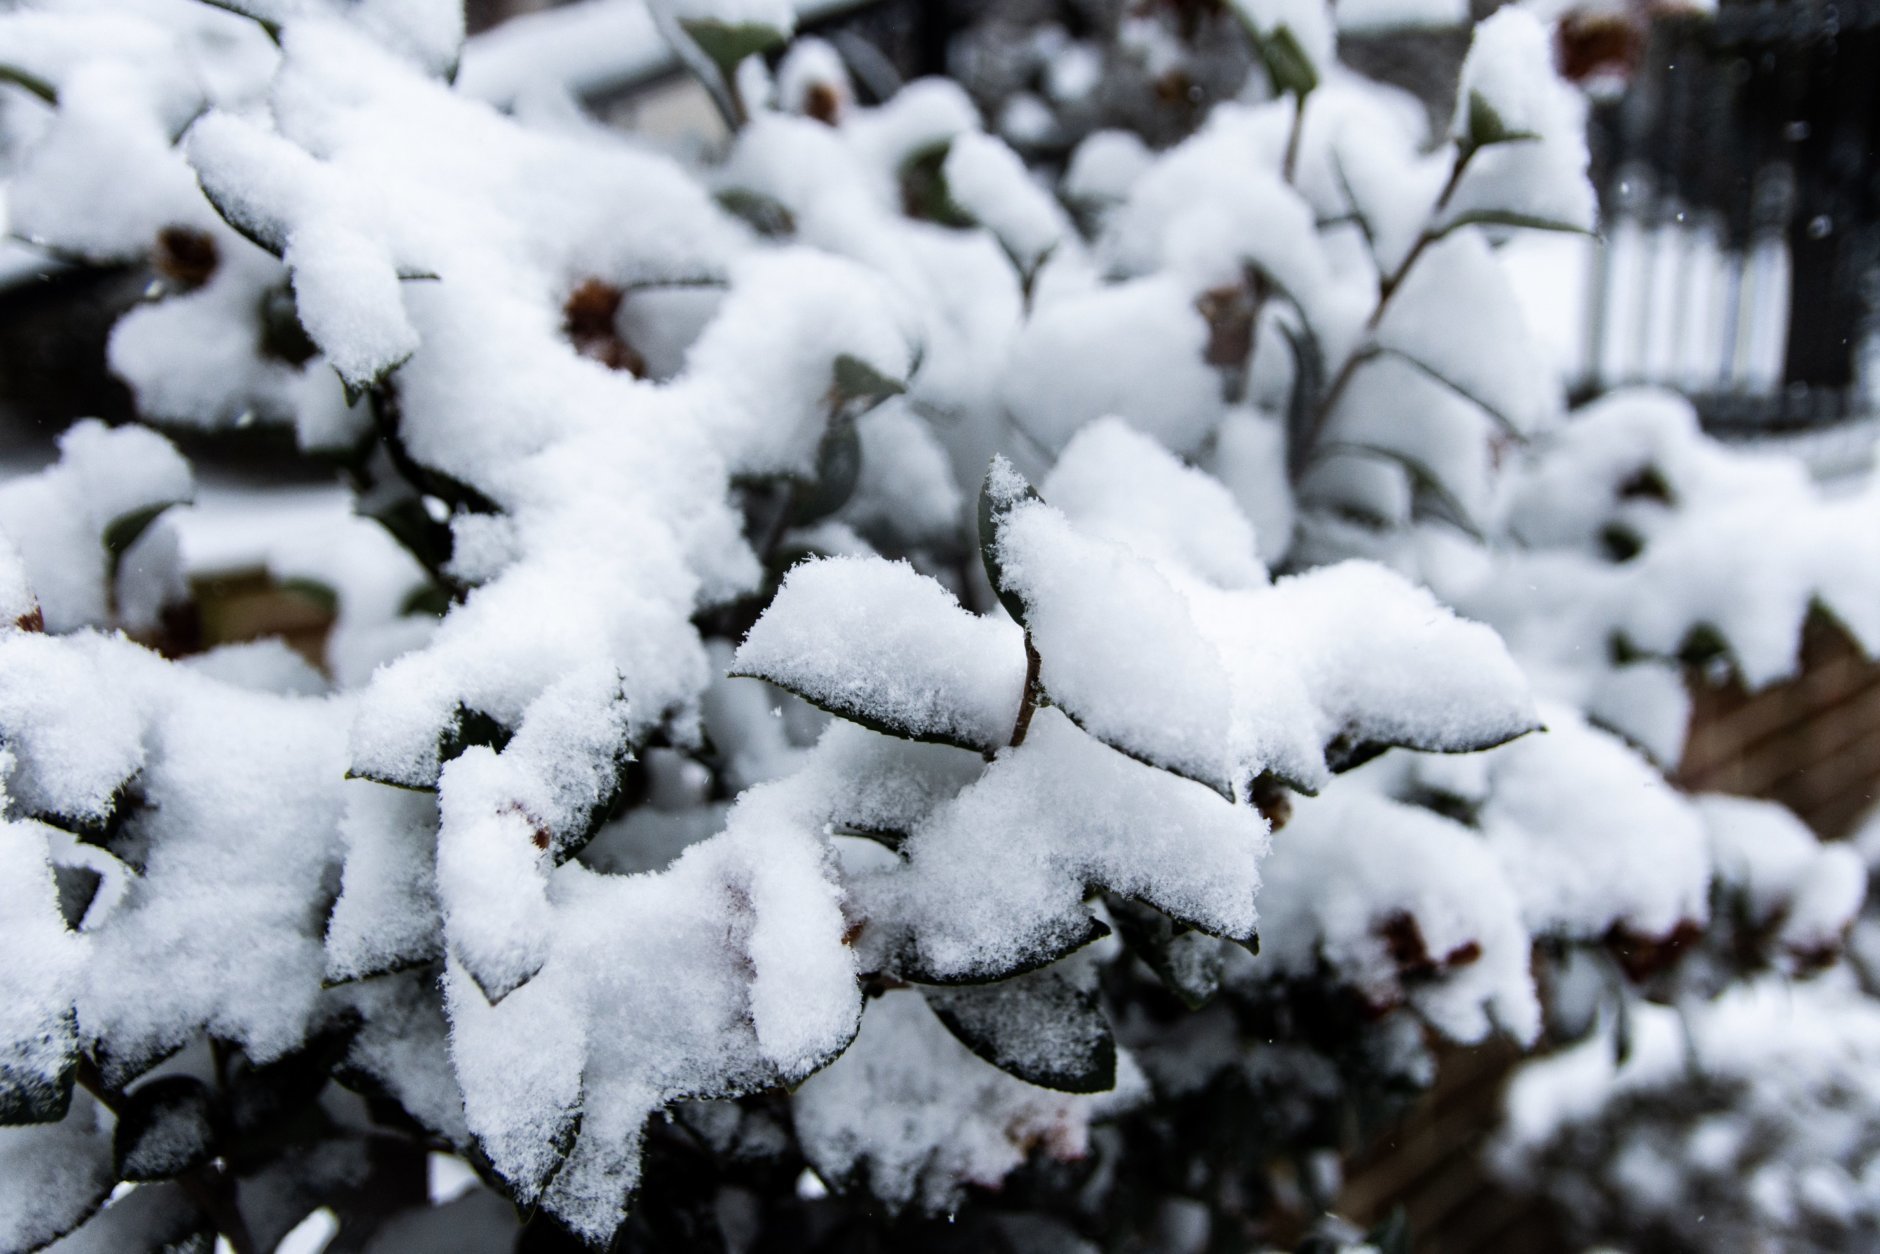 Snow accumulates on a plant in D.C.’s Kalorama neighborhood. (WTOP/Alejandro Alvarez)